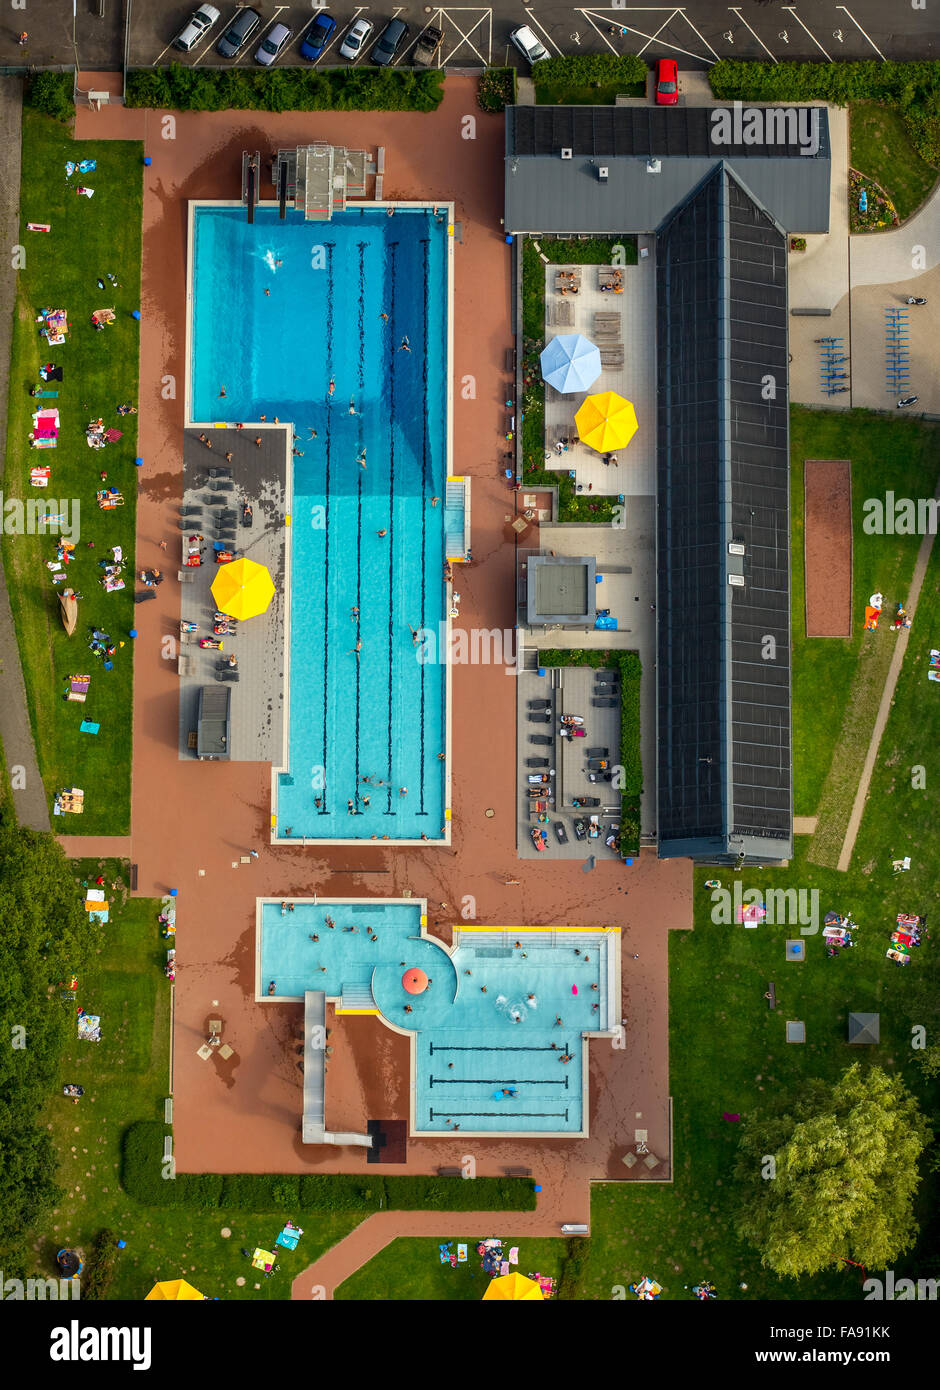 Schwimmer Pool, Sonnenschirme, Perpendicular Recording, Heißwasser im freien Geisweid, Siegen, Siegerland, Südwestfalen, Stockfoto